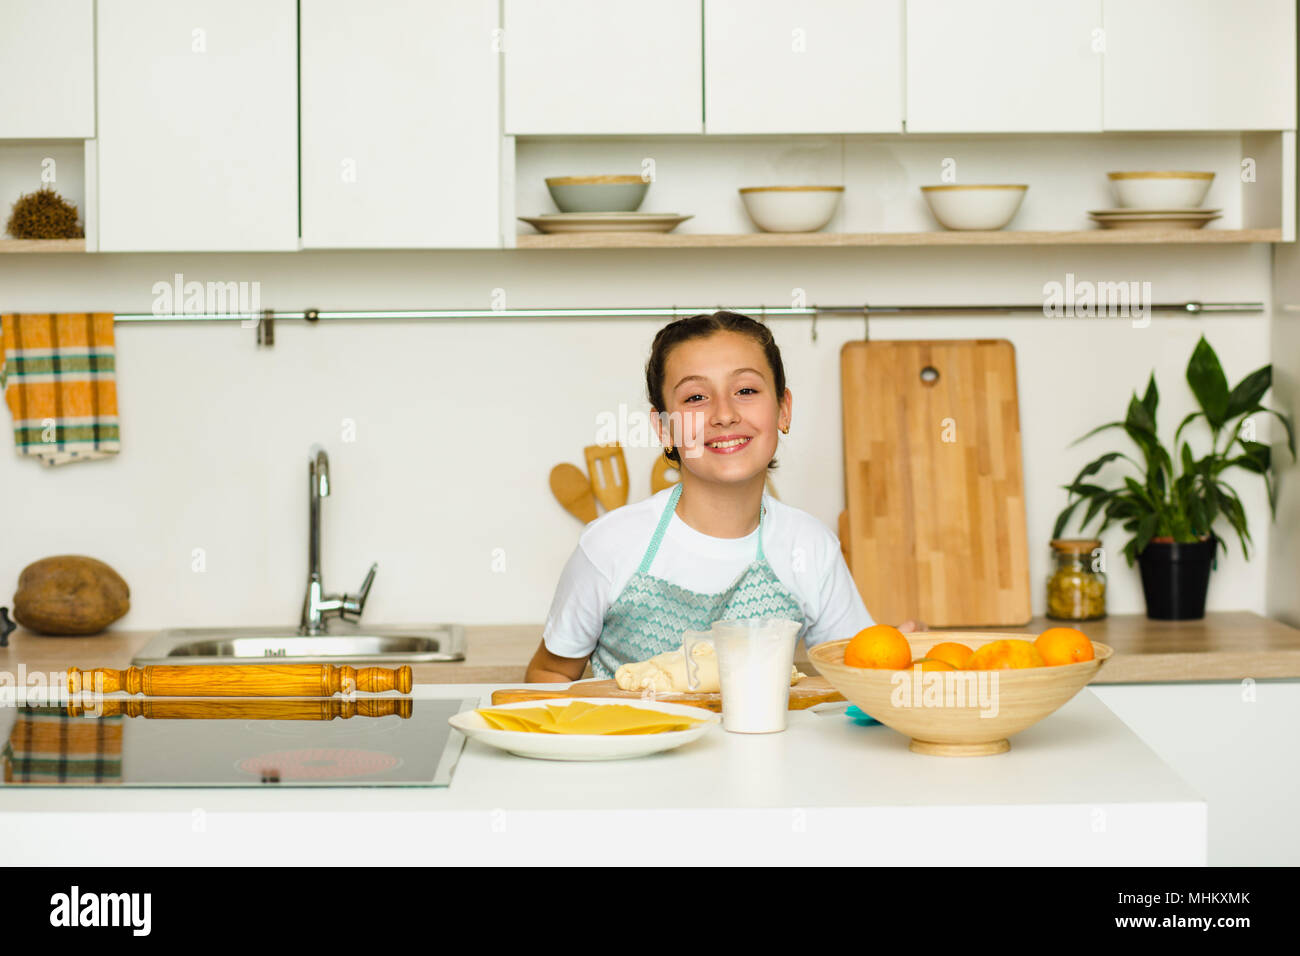 Schöne Mädchen in eine Schürze gekleidet, die Vorbereitung von orange Kuchen, in einem wunderschönen Haus Küche stehen. Glückliches Kind ist Kochen Stockfoto